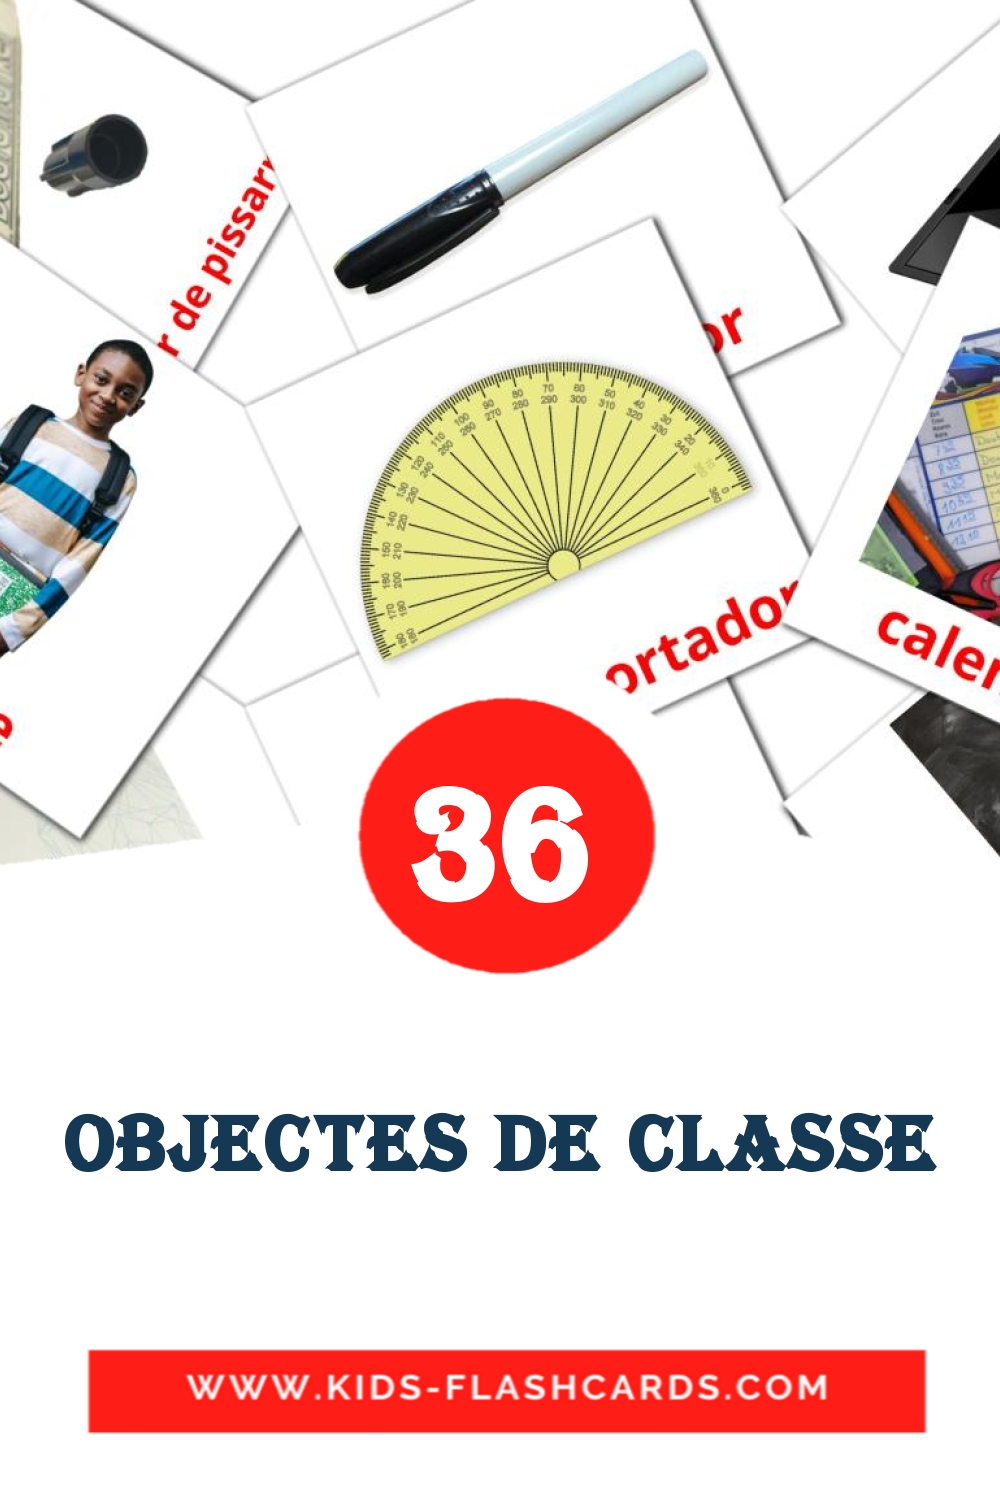 36 tarjetas didacticas de Objectes de classe para el jardín de infancia en catalán